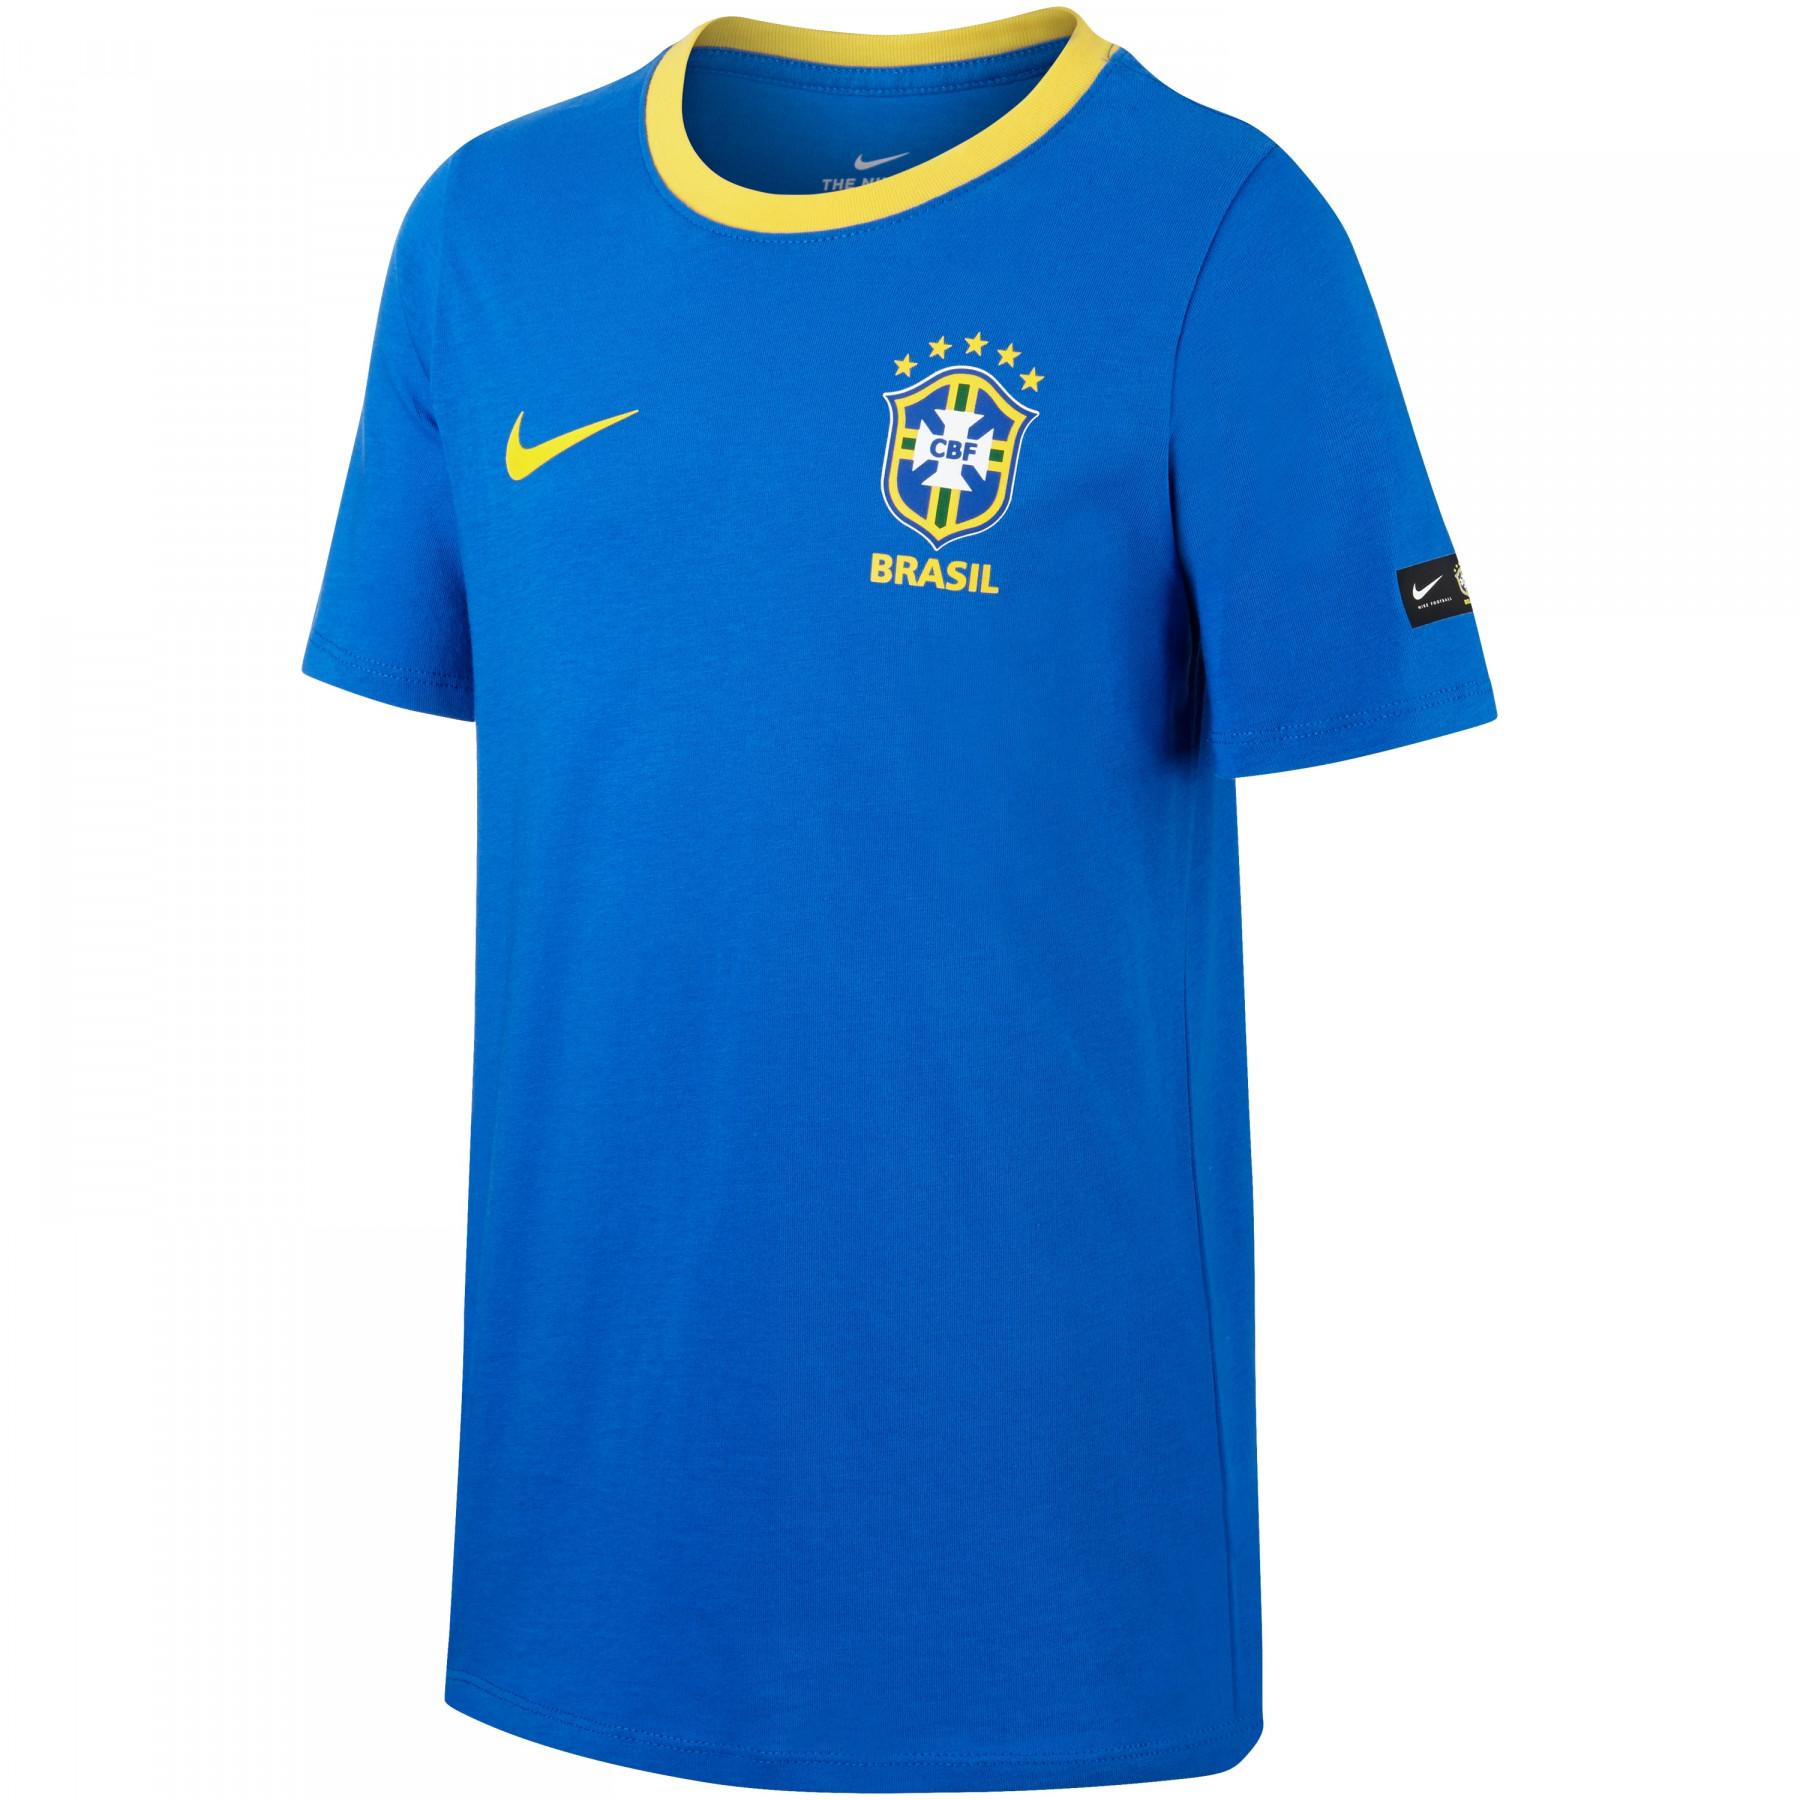 Child's T-shirt Brésil CBF Crest 2018